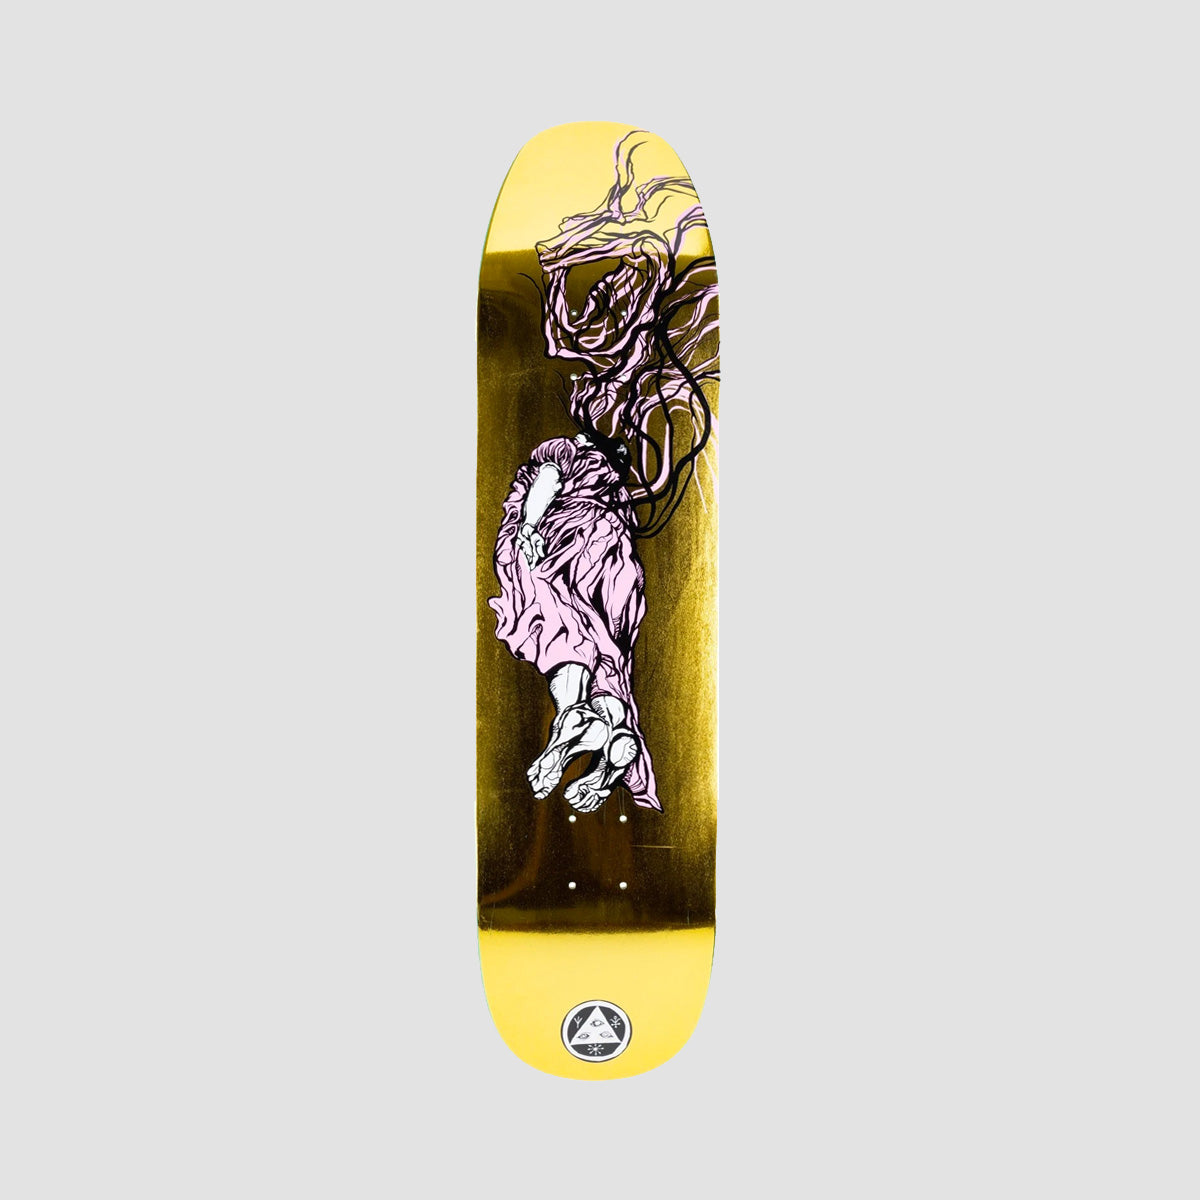 Welcome Transcend on Son of Moontrimmer Skateboard Deck Gold Foil - 8.21"